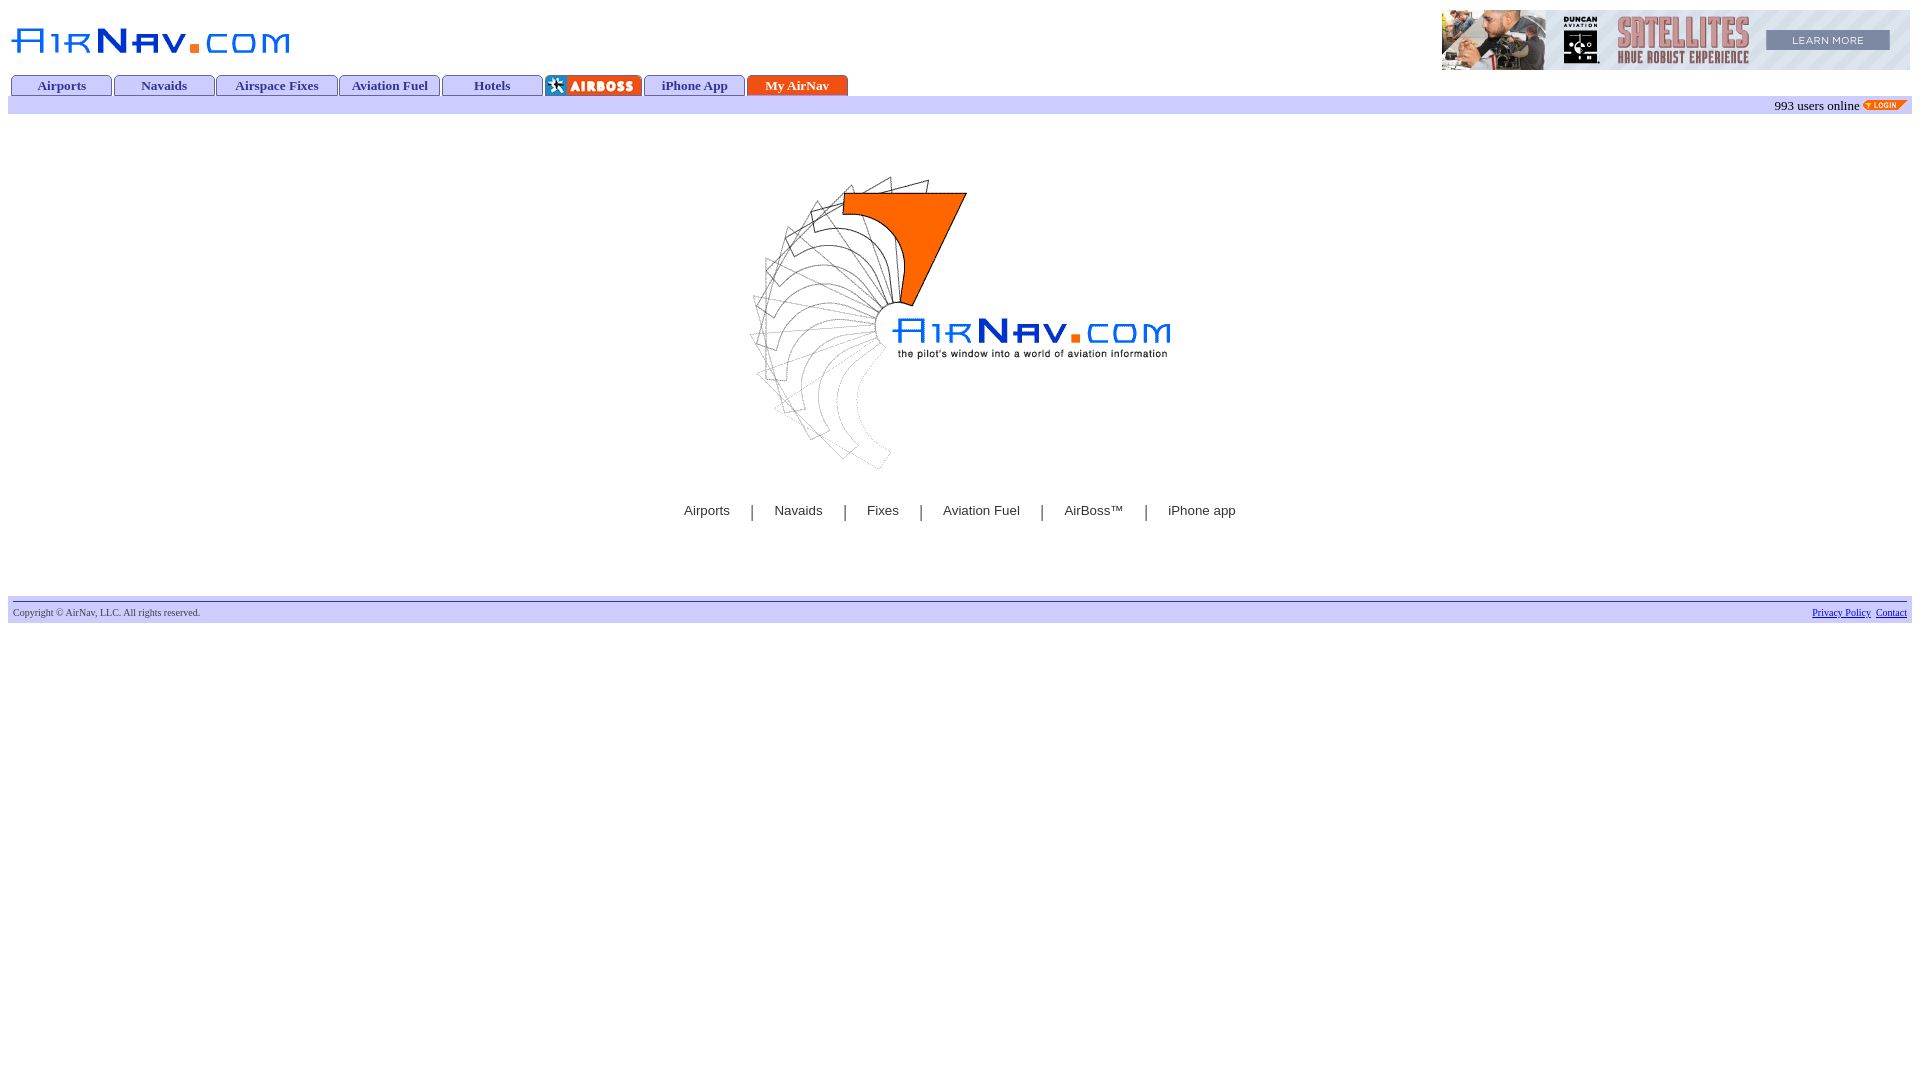 Website status airnav.com is   ONLINE